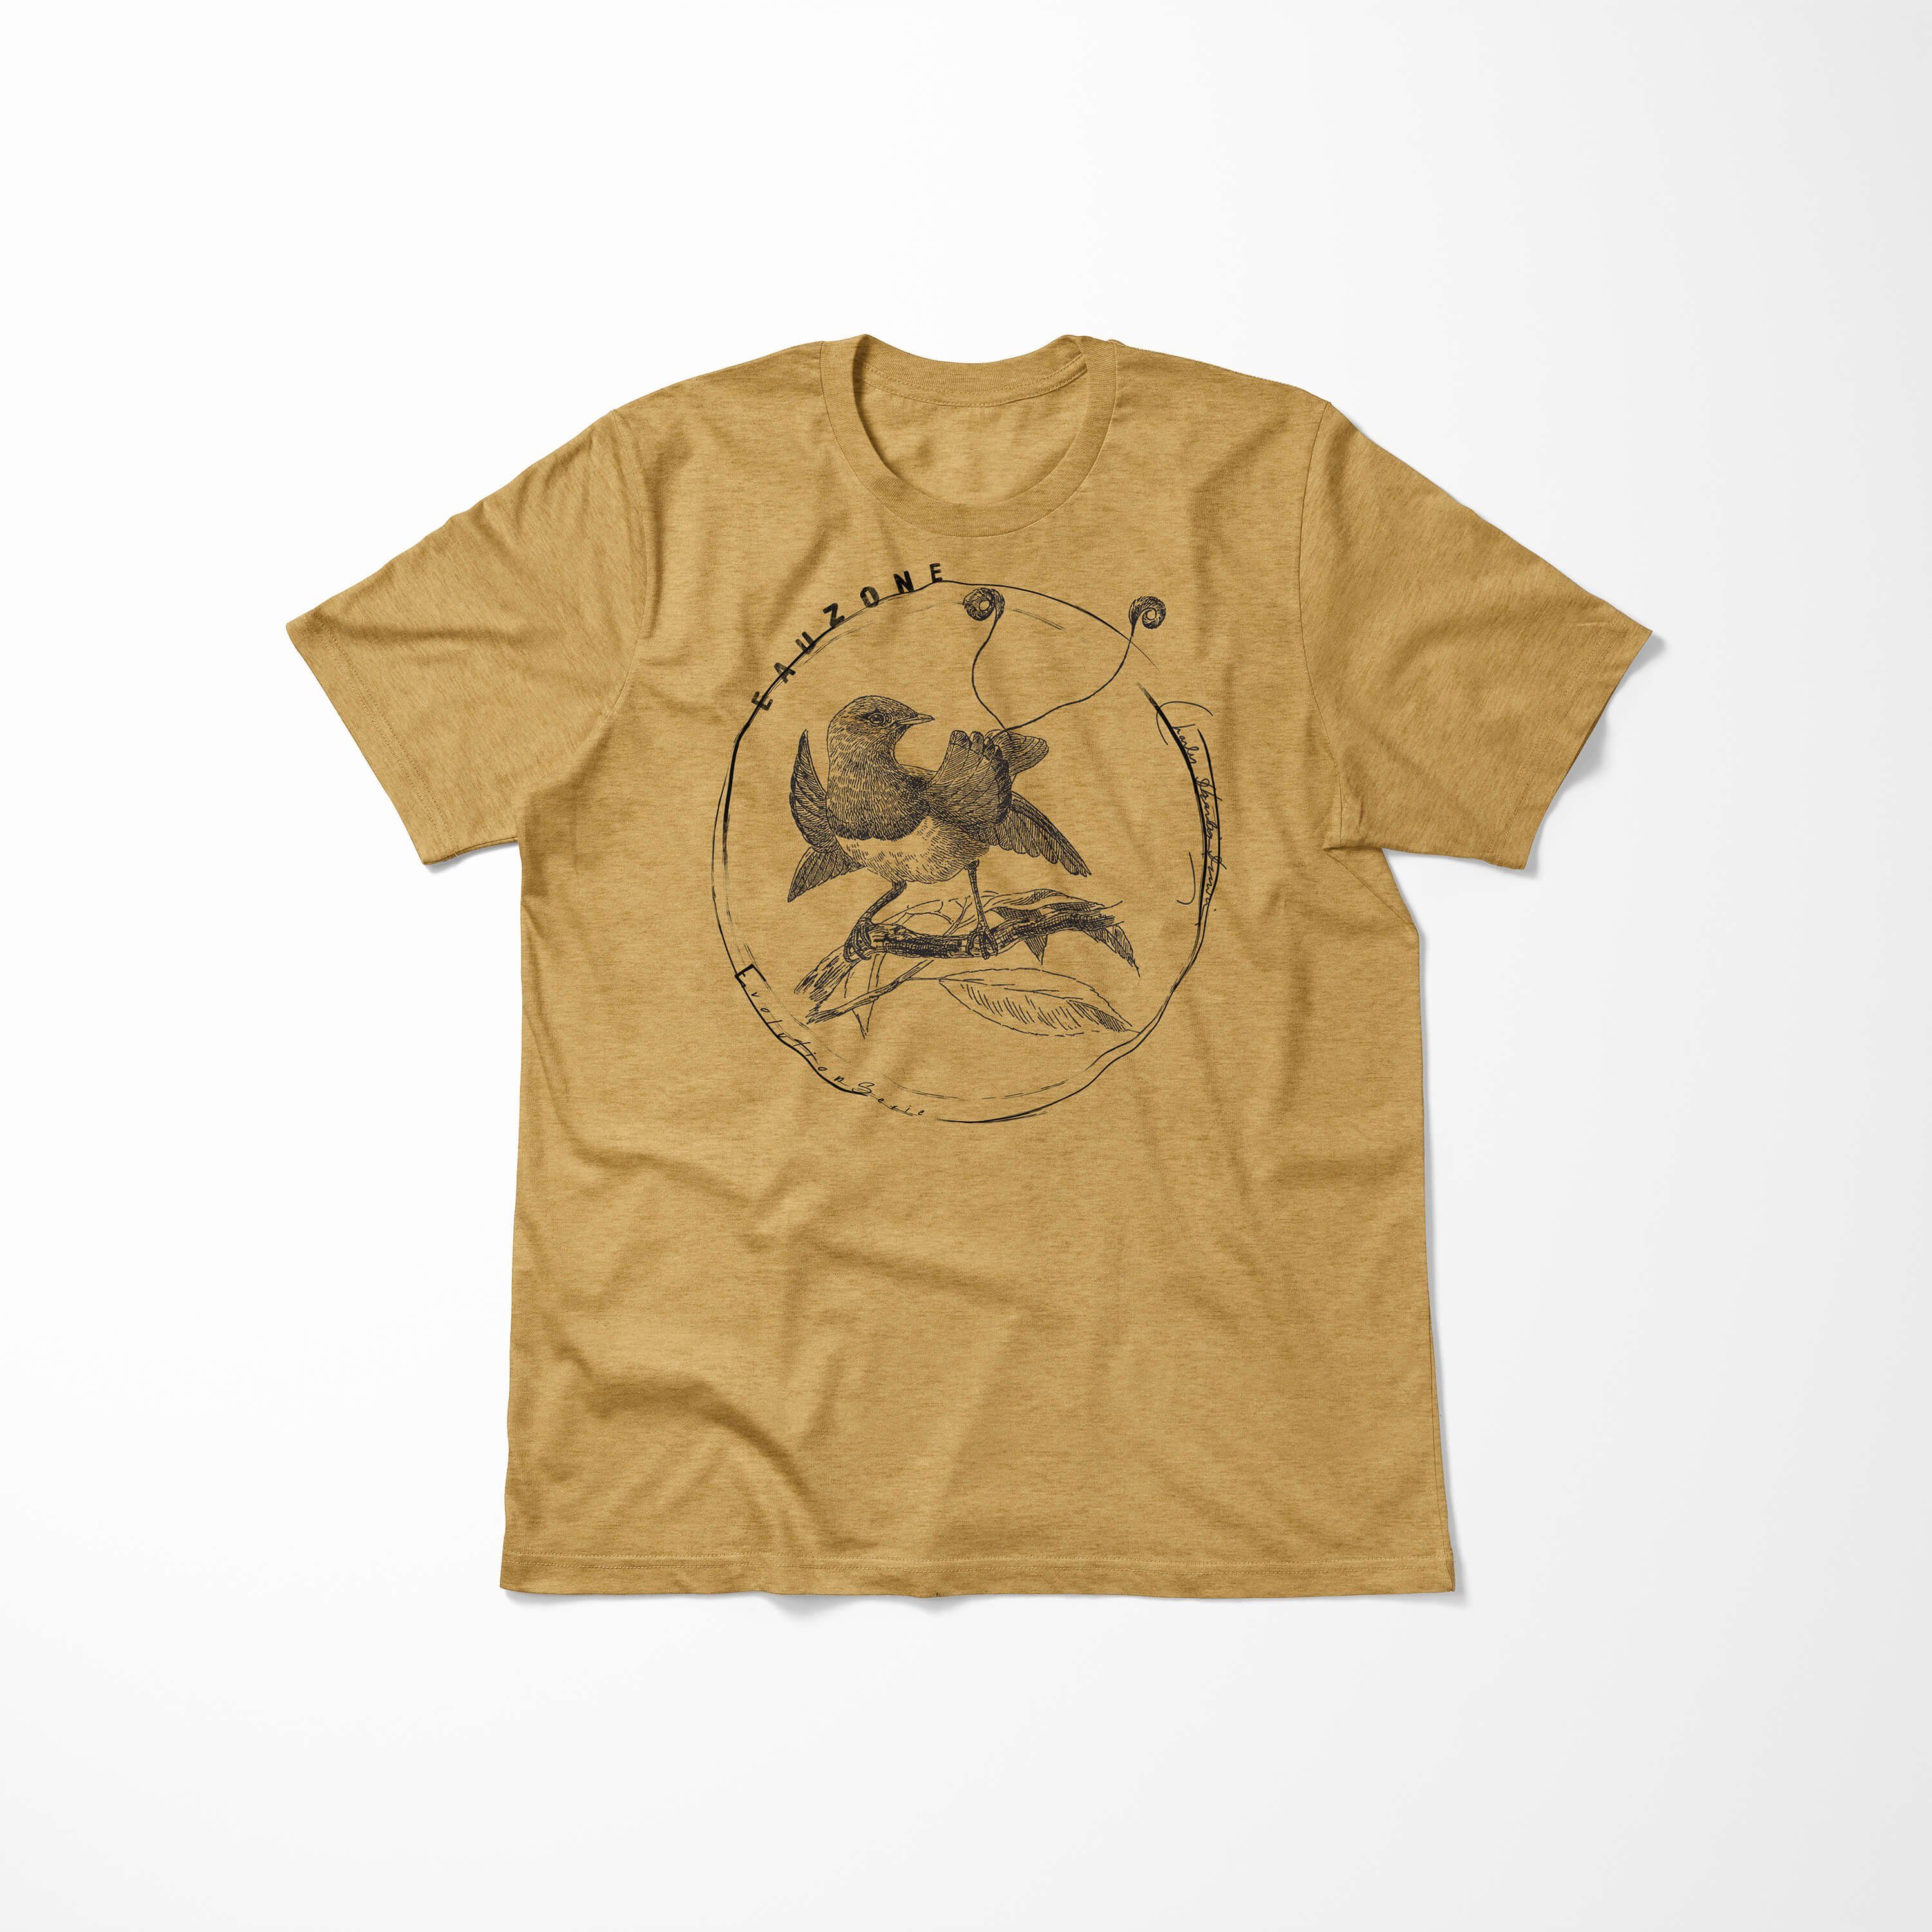 Herren Gold T-Shirt Evolution Sinus Antique T-Shirt Paradiesvogel Art